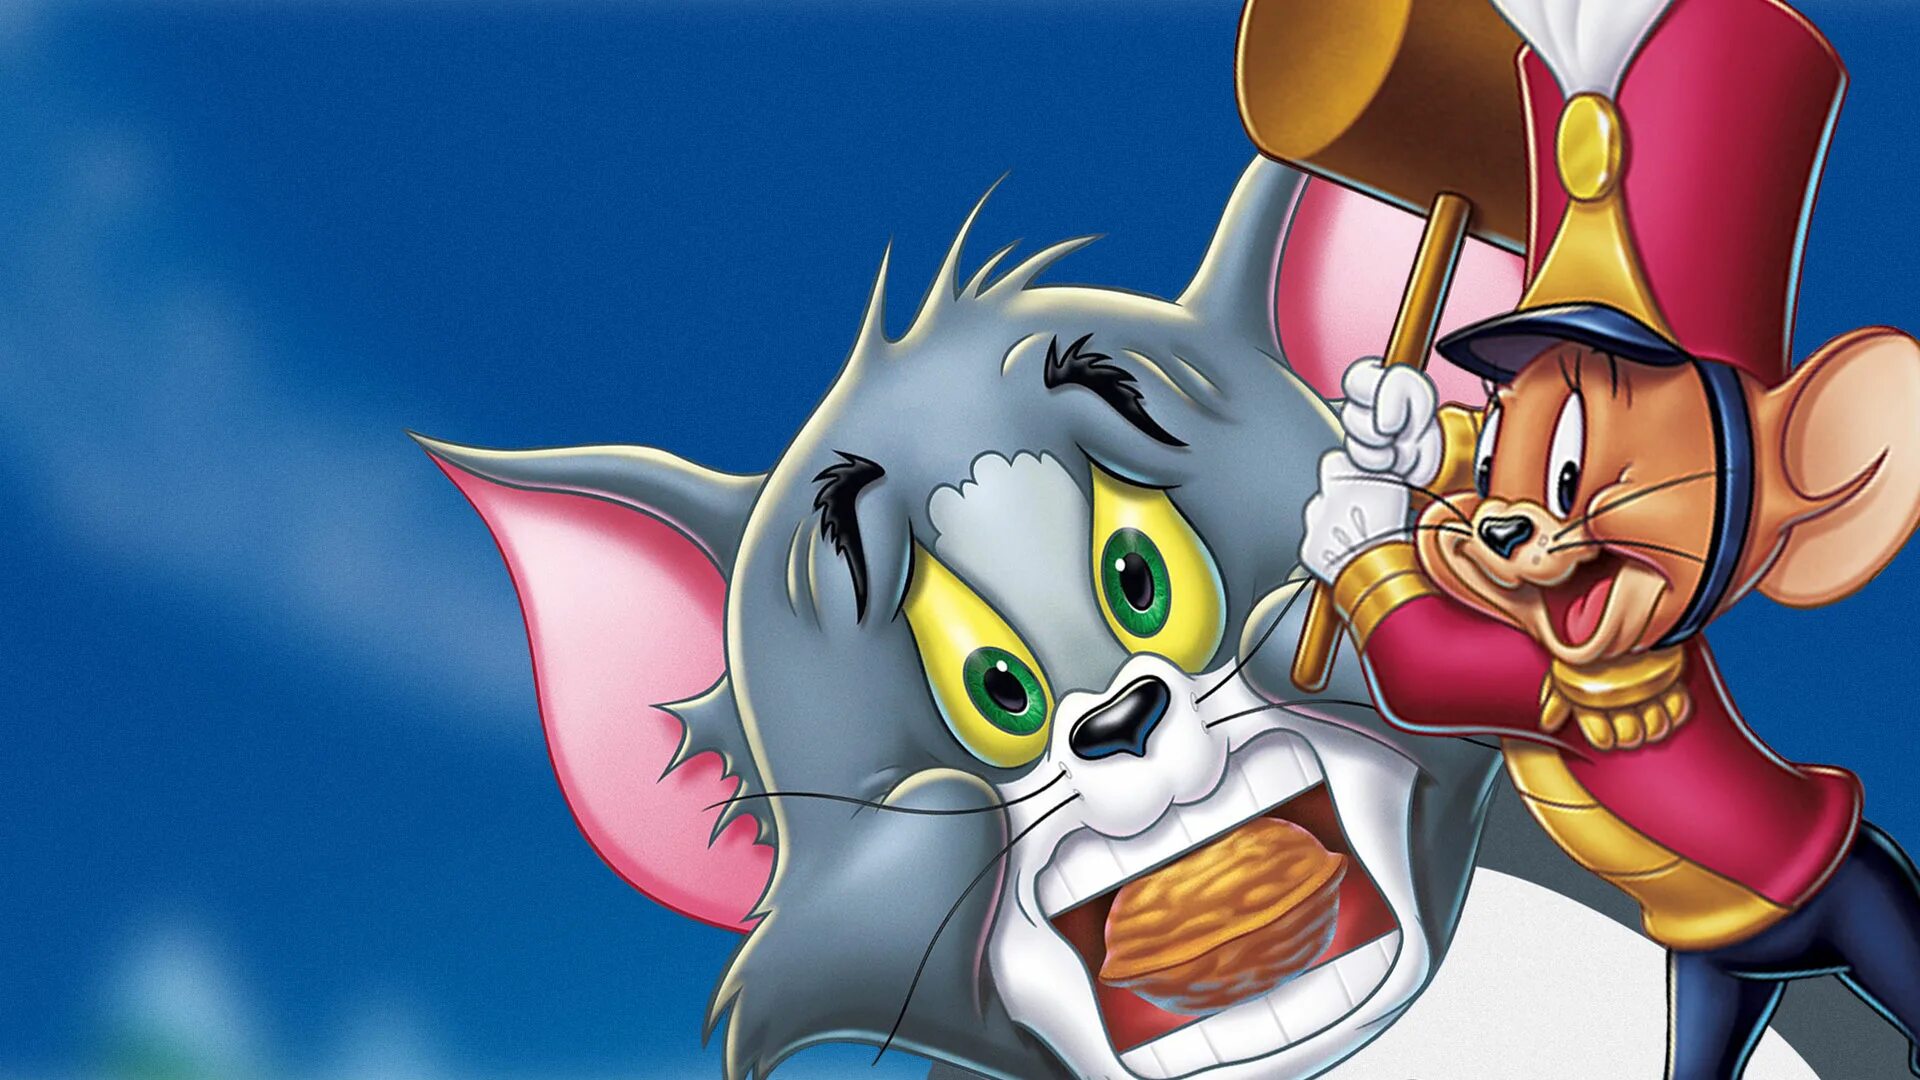 Tom n toms. Tom and Jerry 2007. Том и Джерри история о Щелкунчике. Том и Джерри СТС.